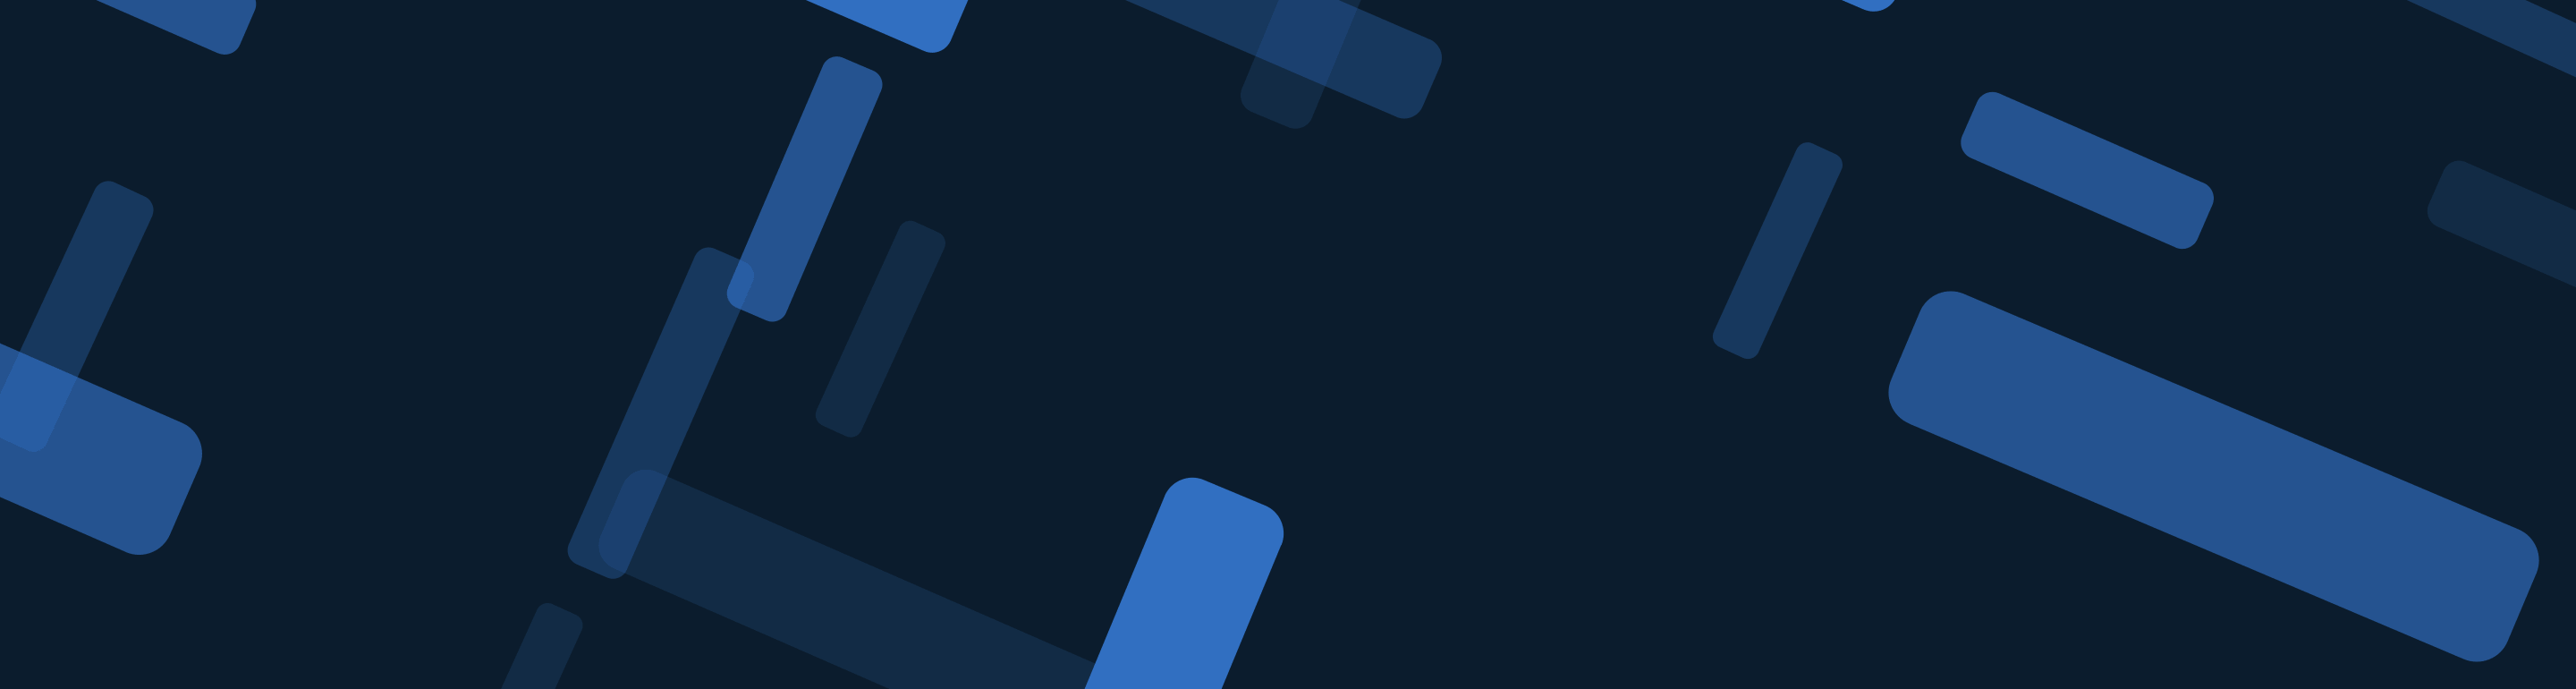 blue-node-dark